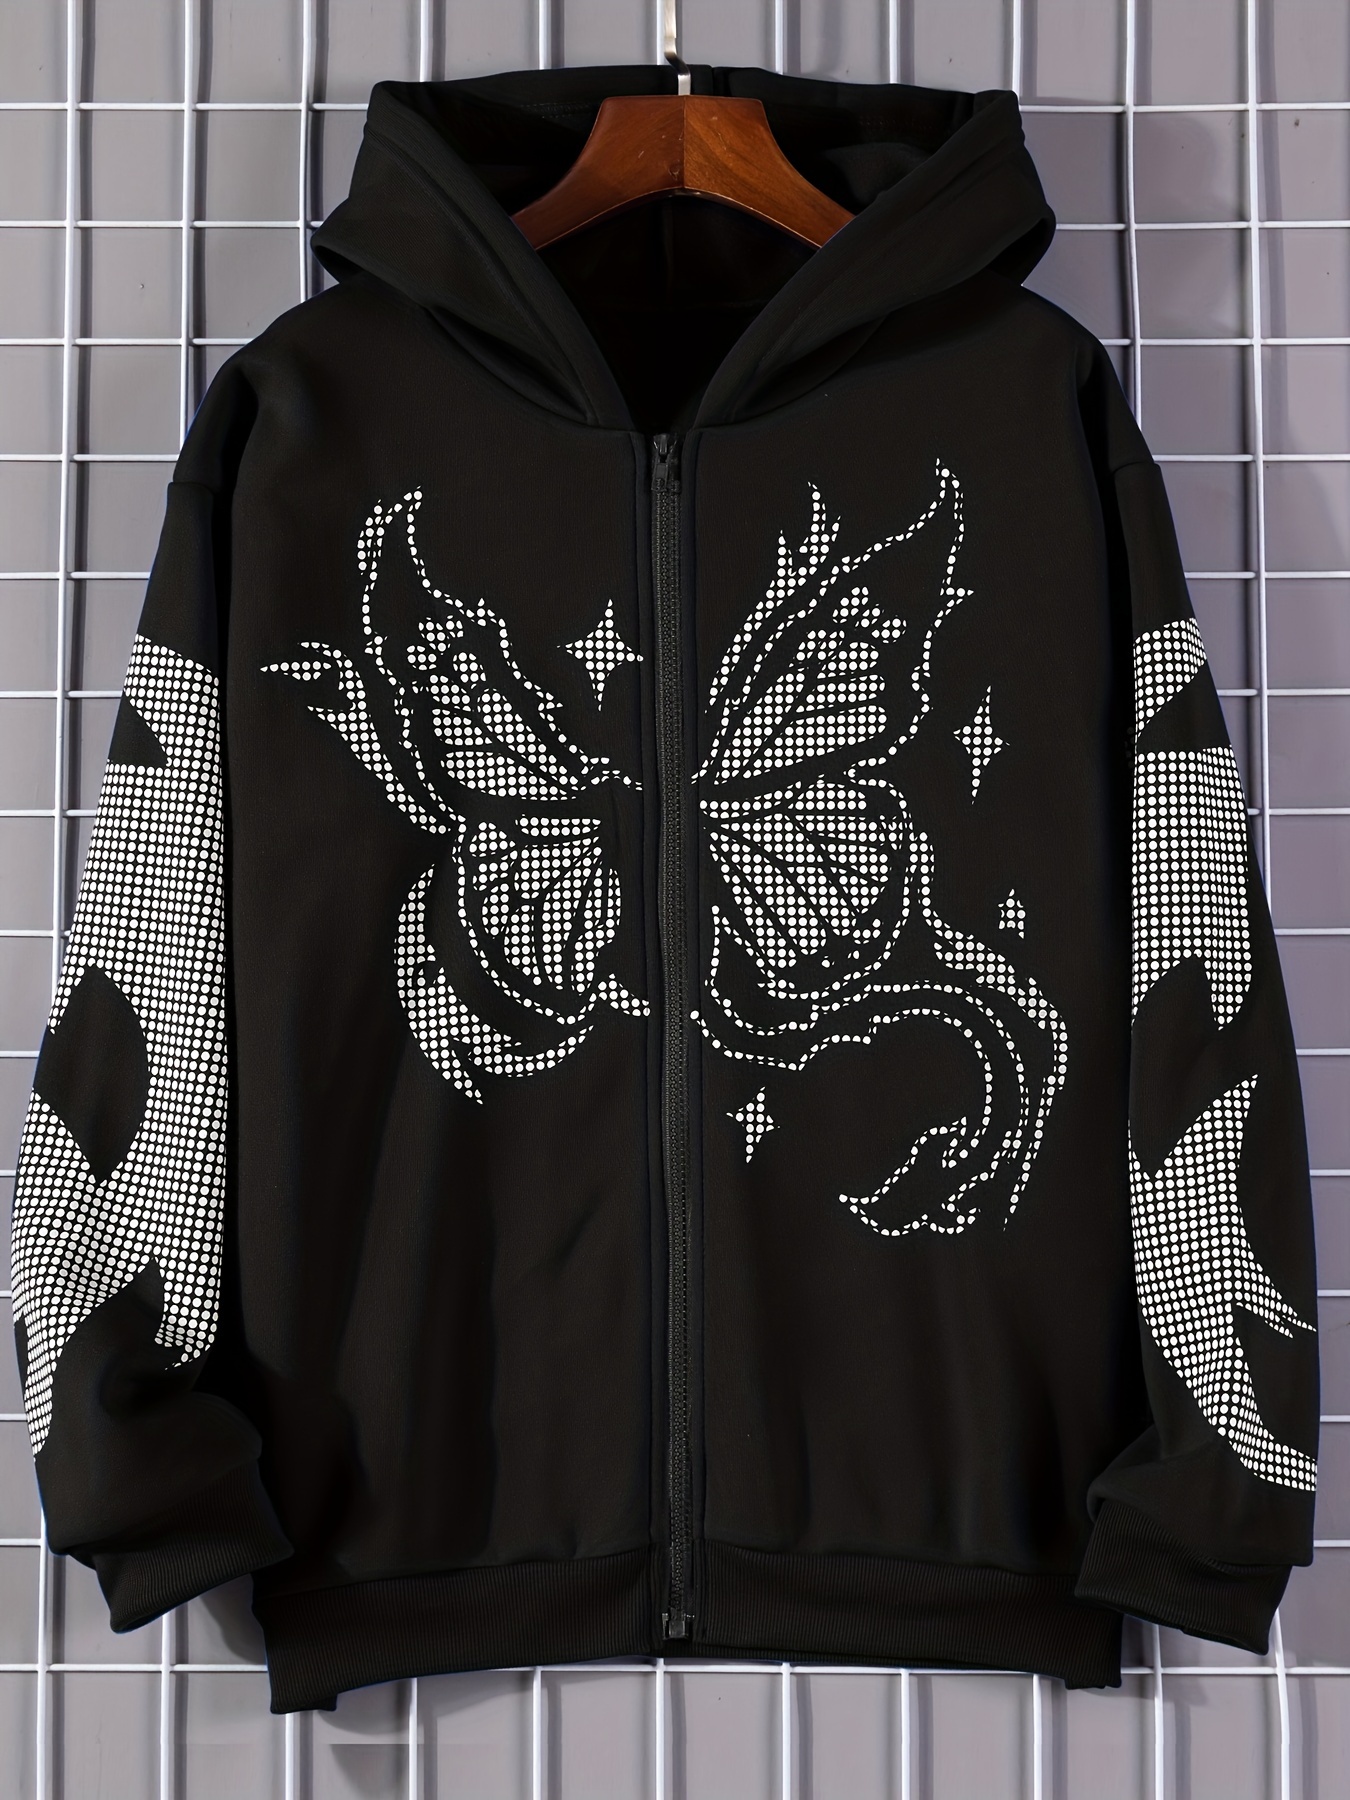 Butterfly Print Zip Up Hoodies Long Sleeve Casual Sweatshirt Womens Clothing Temu 